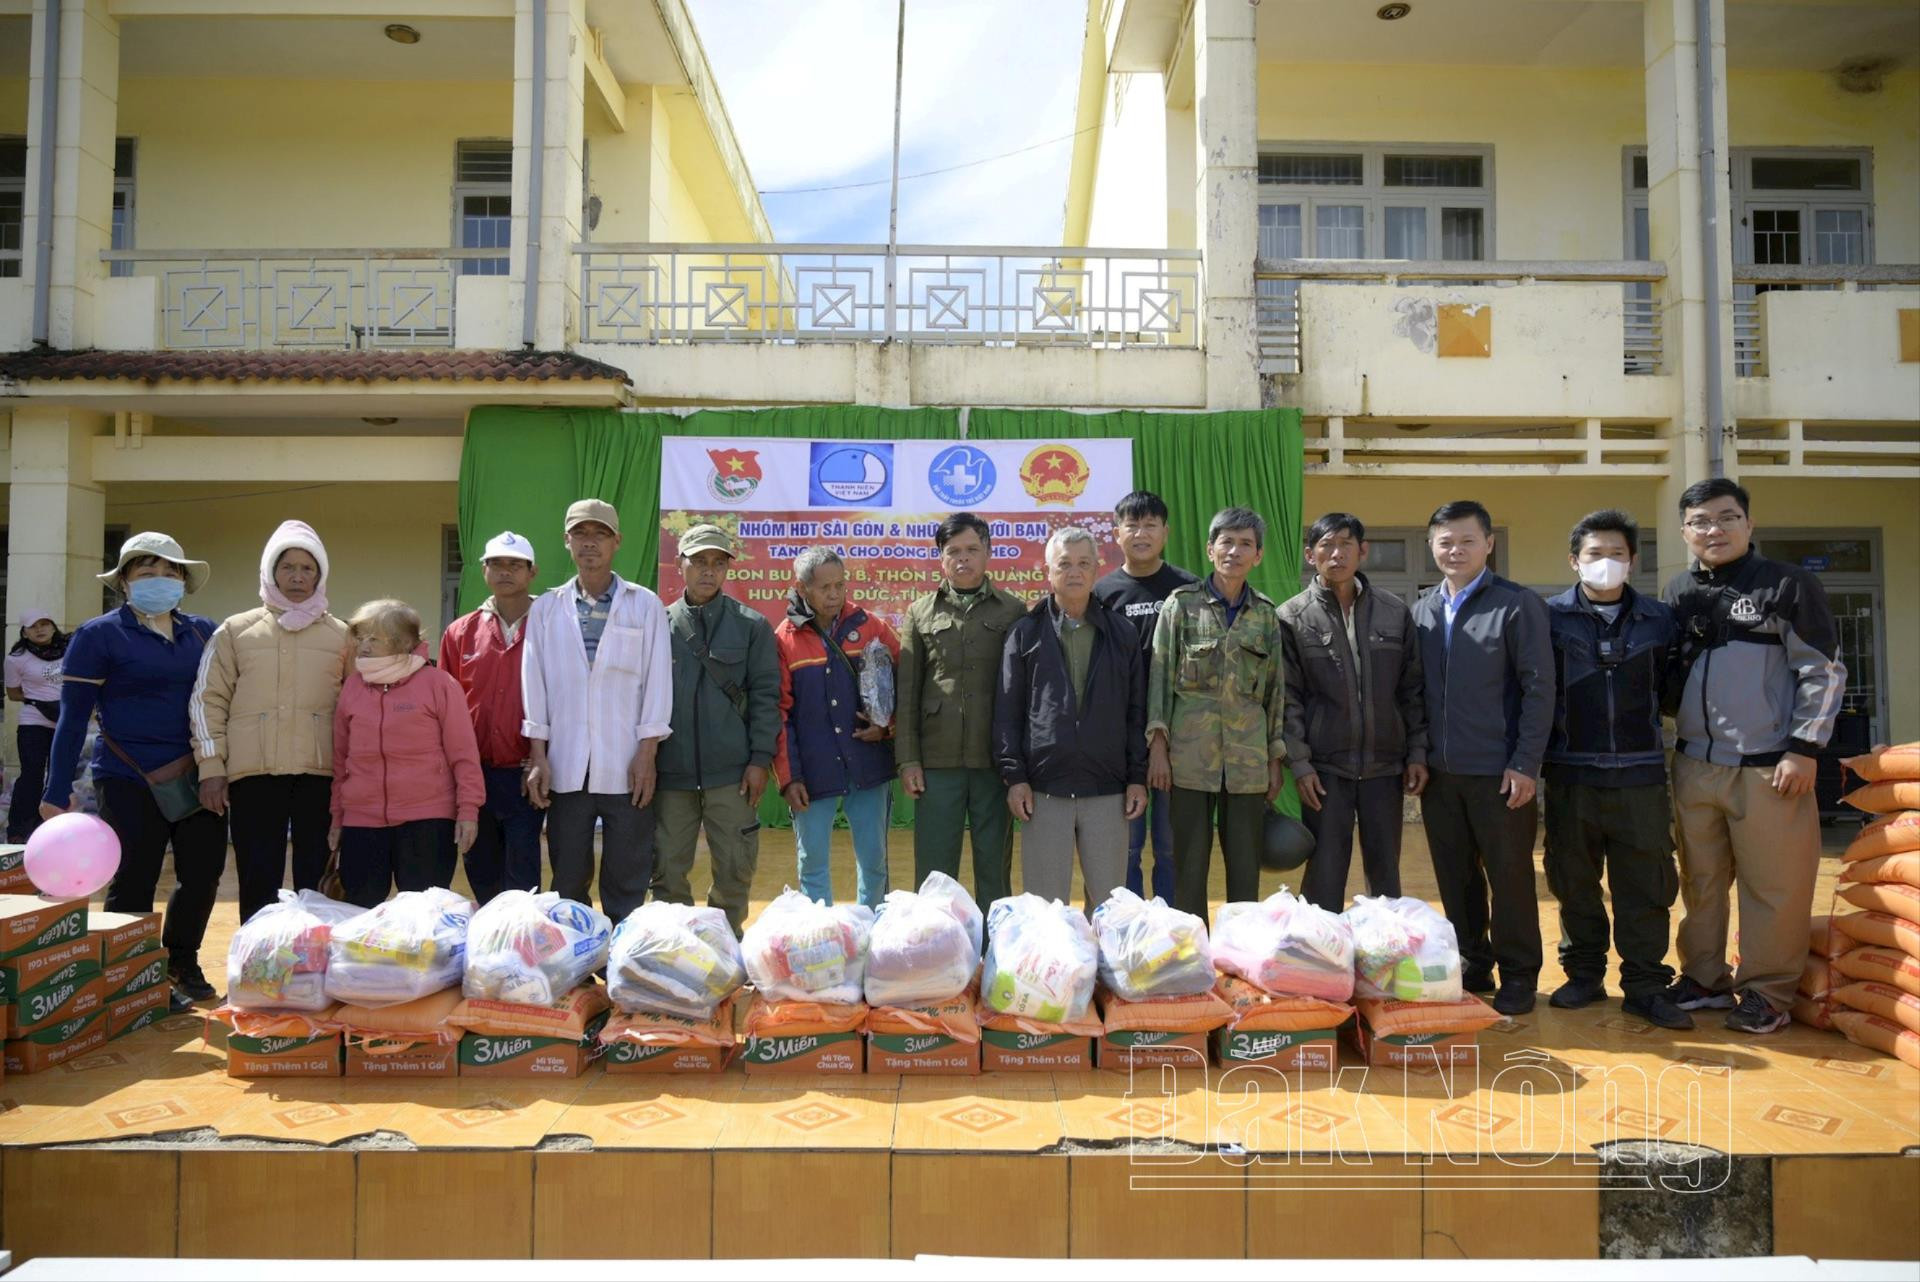 Ngoài ra, đoàn còn trao tặng 300 suất quà cho người dân ở xã Quảng Tân. Ảnh: Hoàng Dương